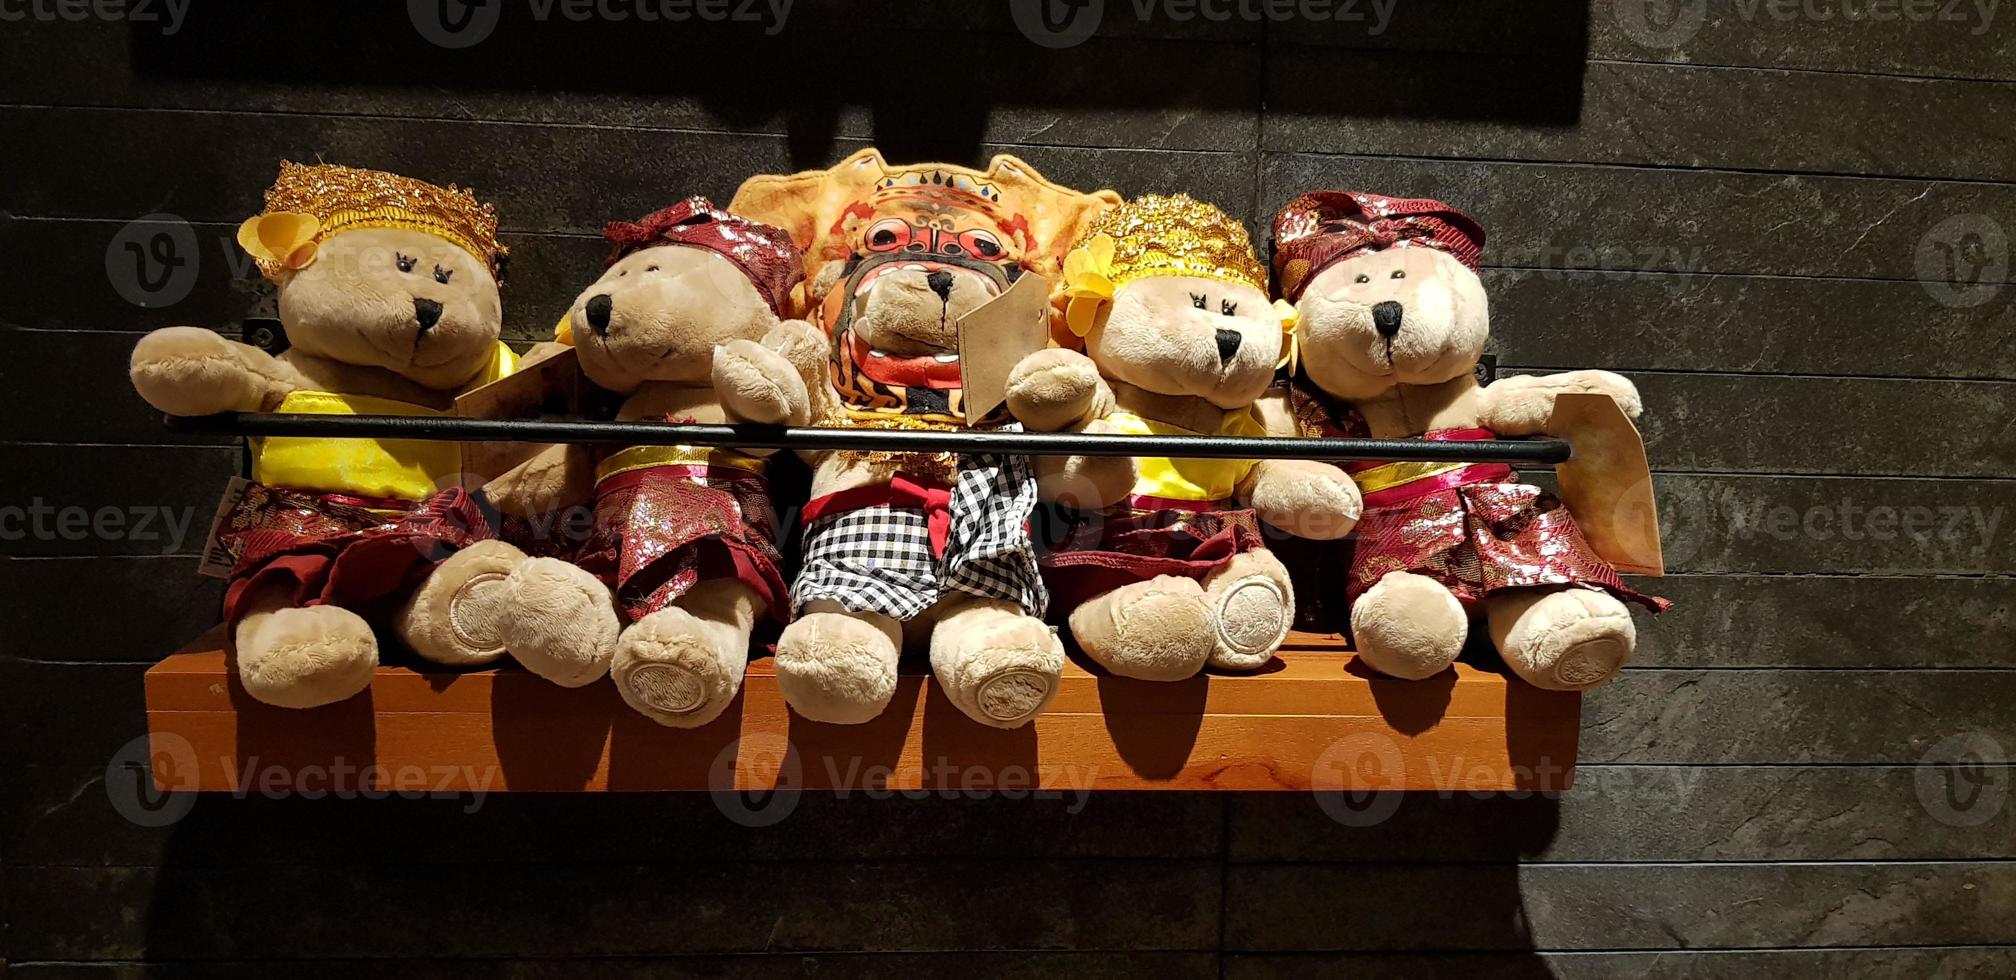 gruppe von flauschigen ausgestopften bärenspielzeugen, die verschiedene kleider tragen, teddybär-stofftier foto